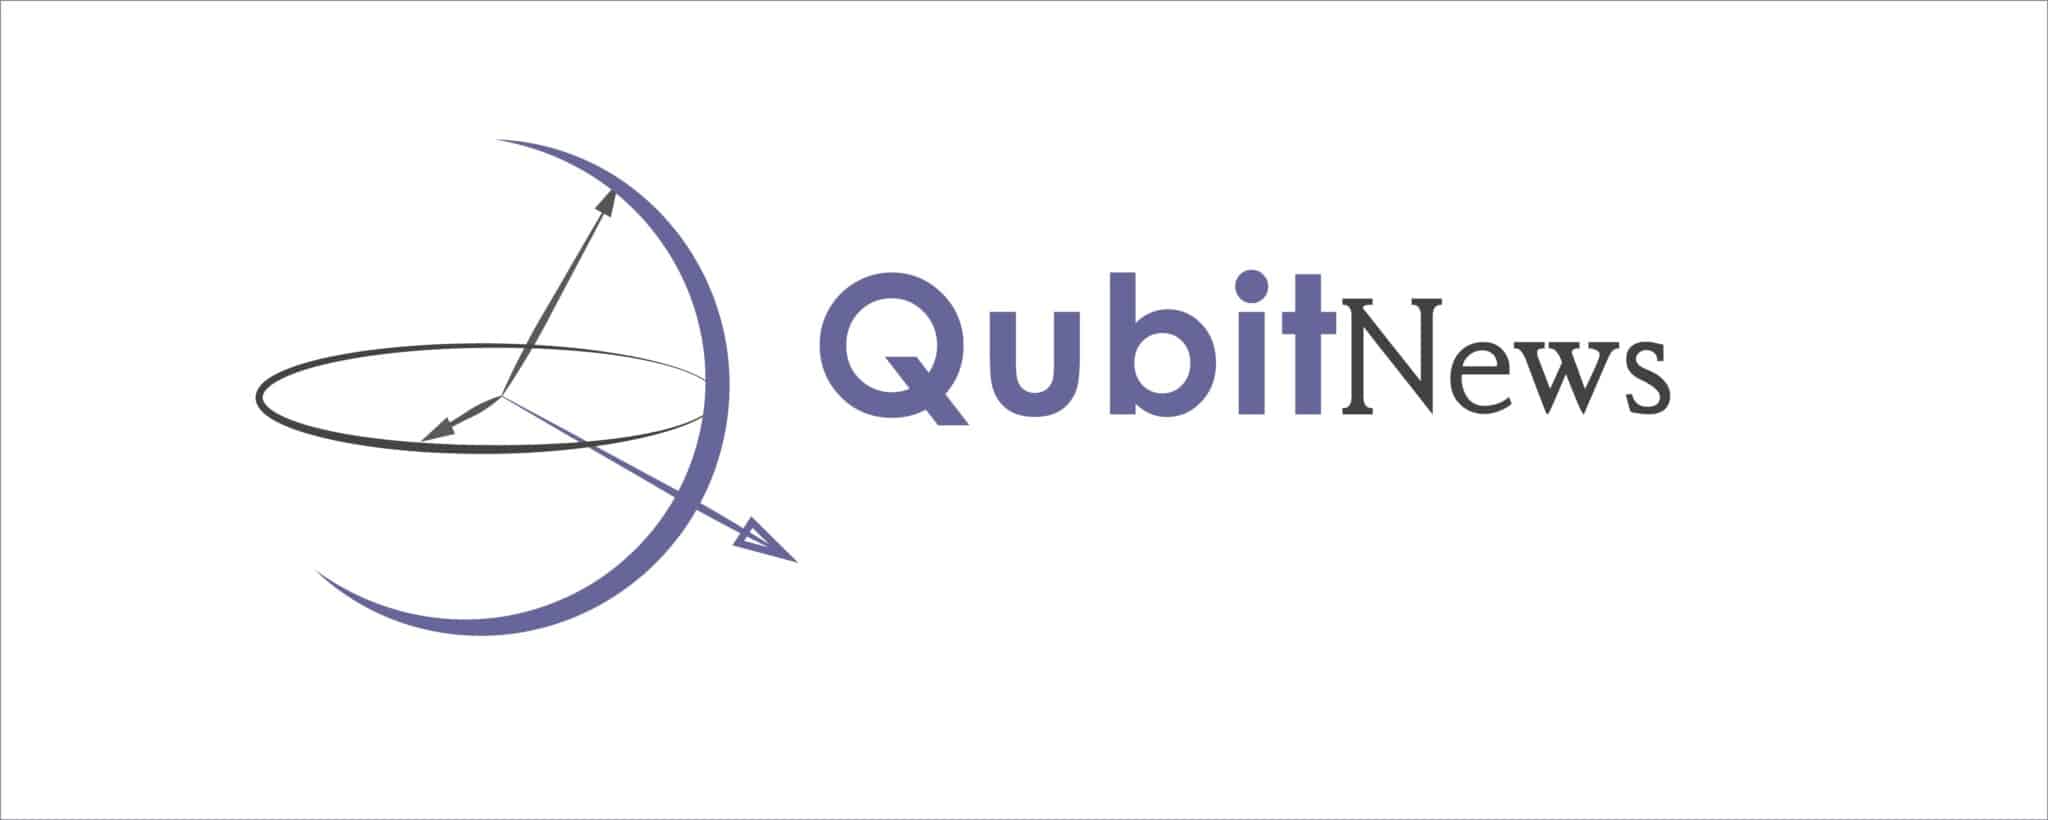 QubitNews logo scaled